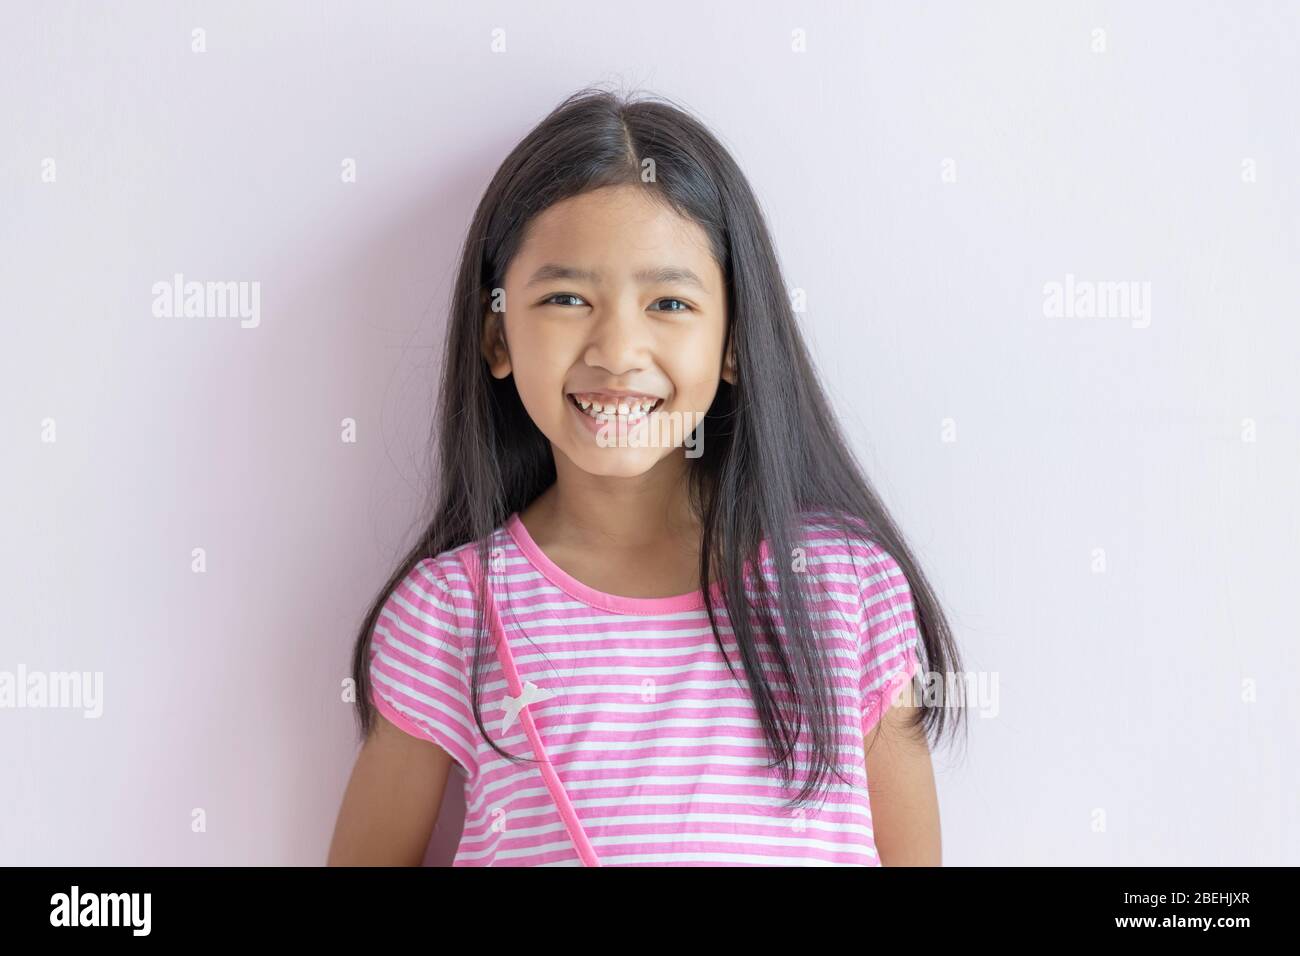 Asiatisches kleines Mädchen lächelt hell. Kinder, die rosafarbene weiße Kleider und langes schwarzes Haar tragen. Das Kind blickt nach vorne und lächelt glücklich. Porträts Stockfoto